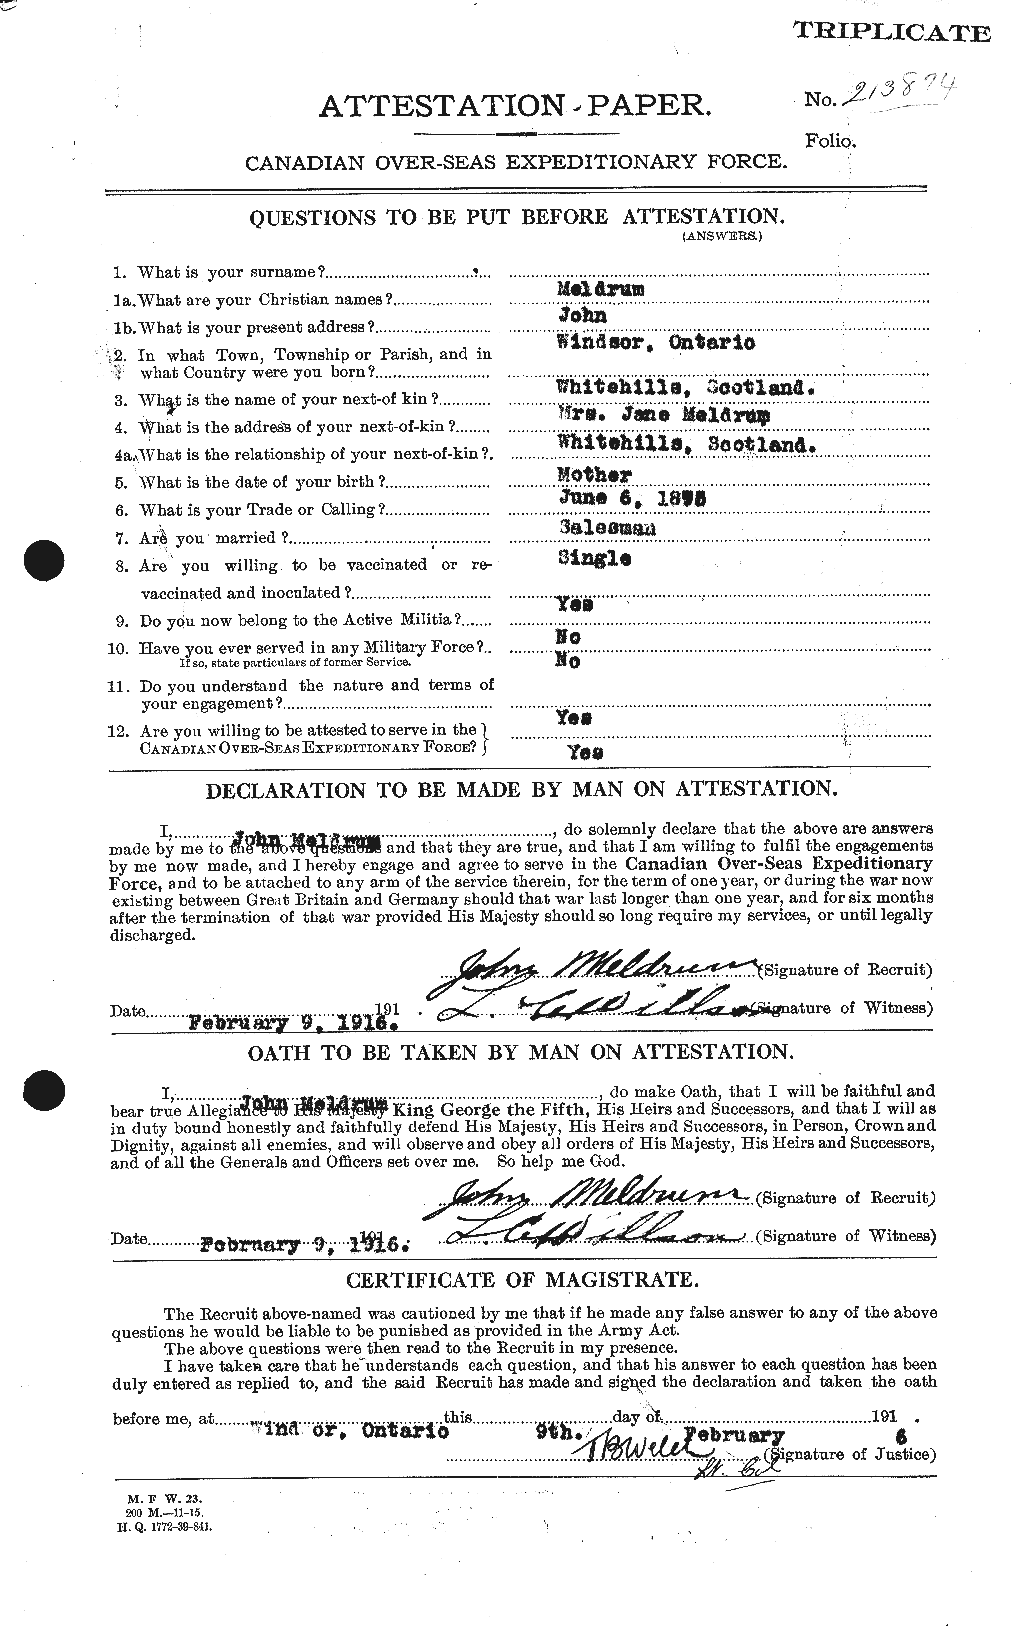 Dossiers du Personnel de la Première Guerre mondiale - CEC 493624a